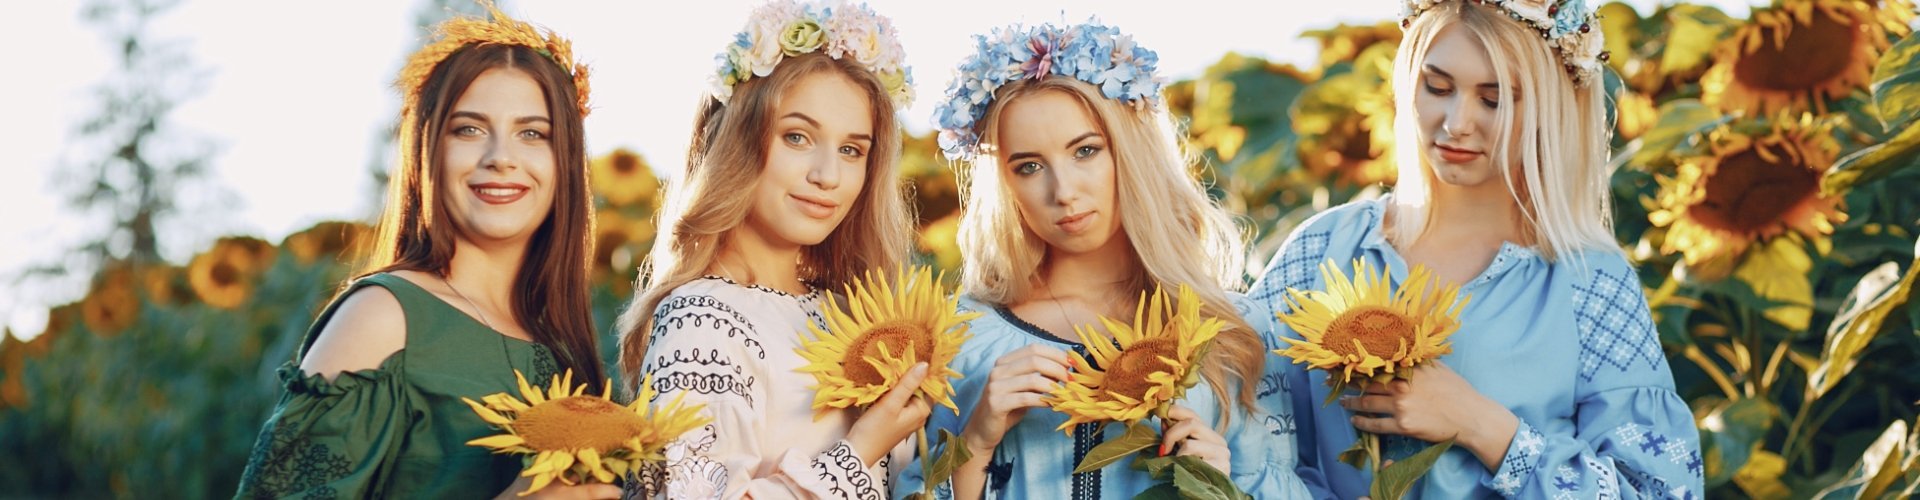 украинские девушки в поле с подсолнухами